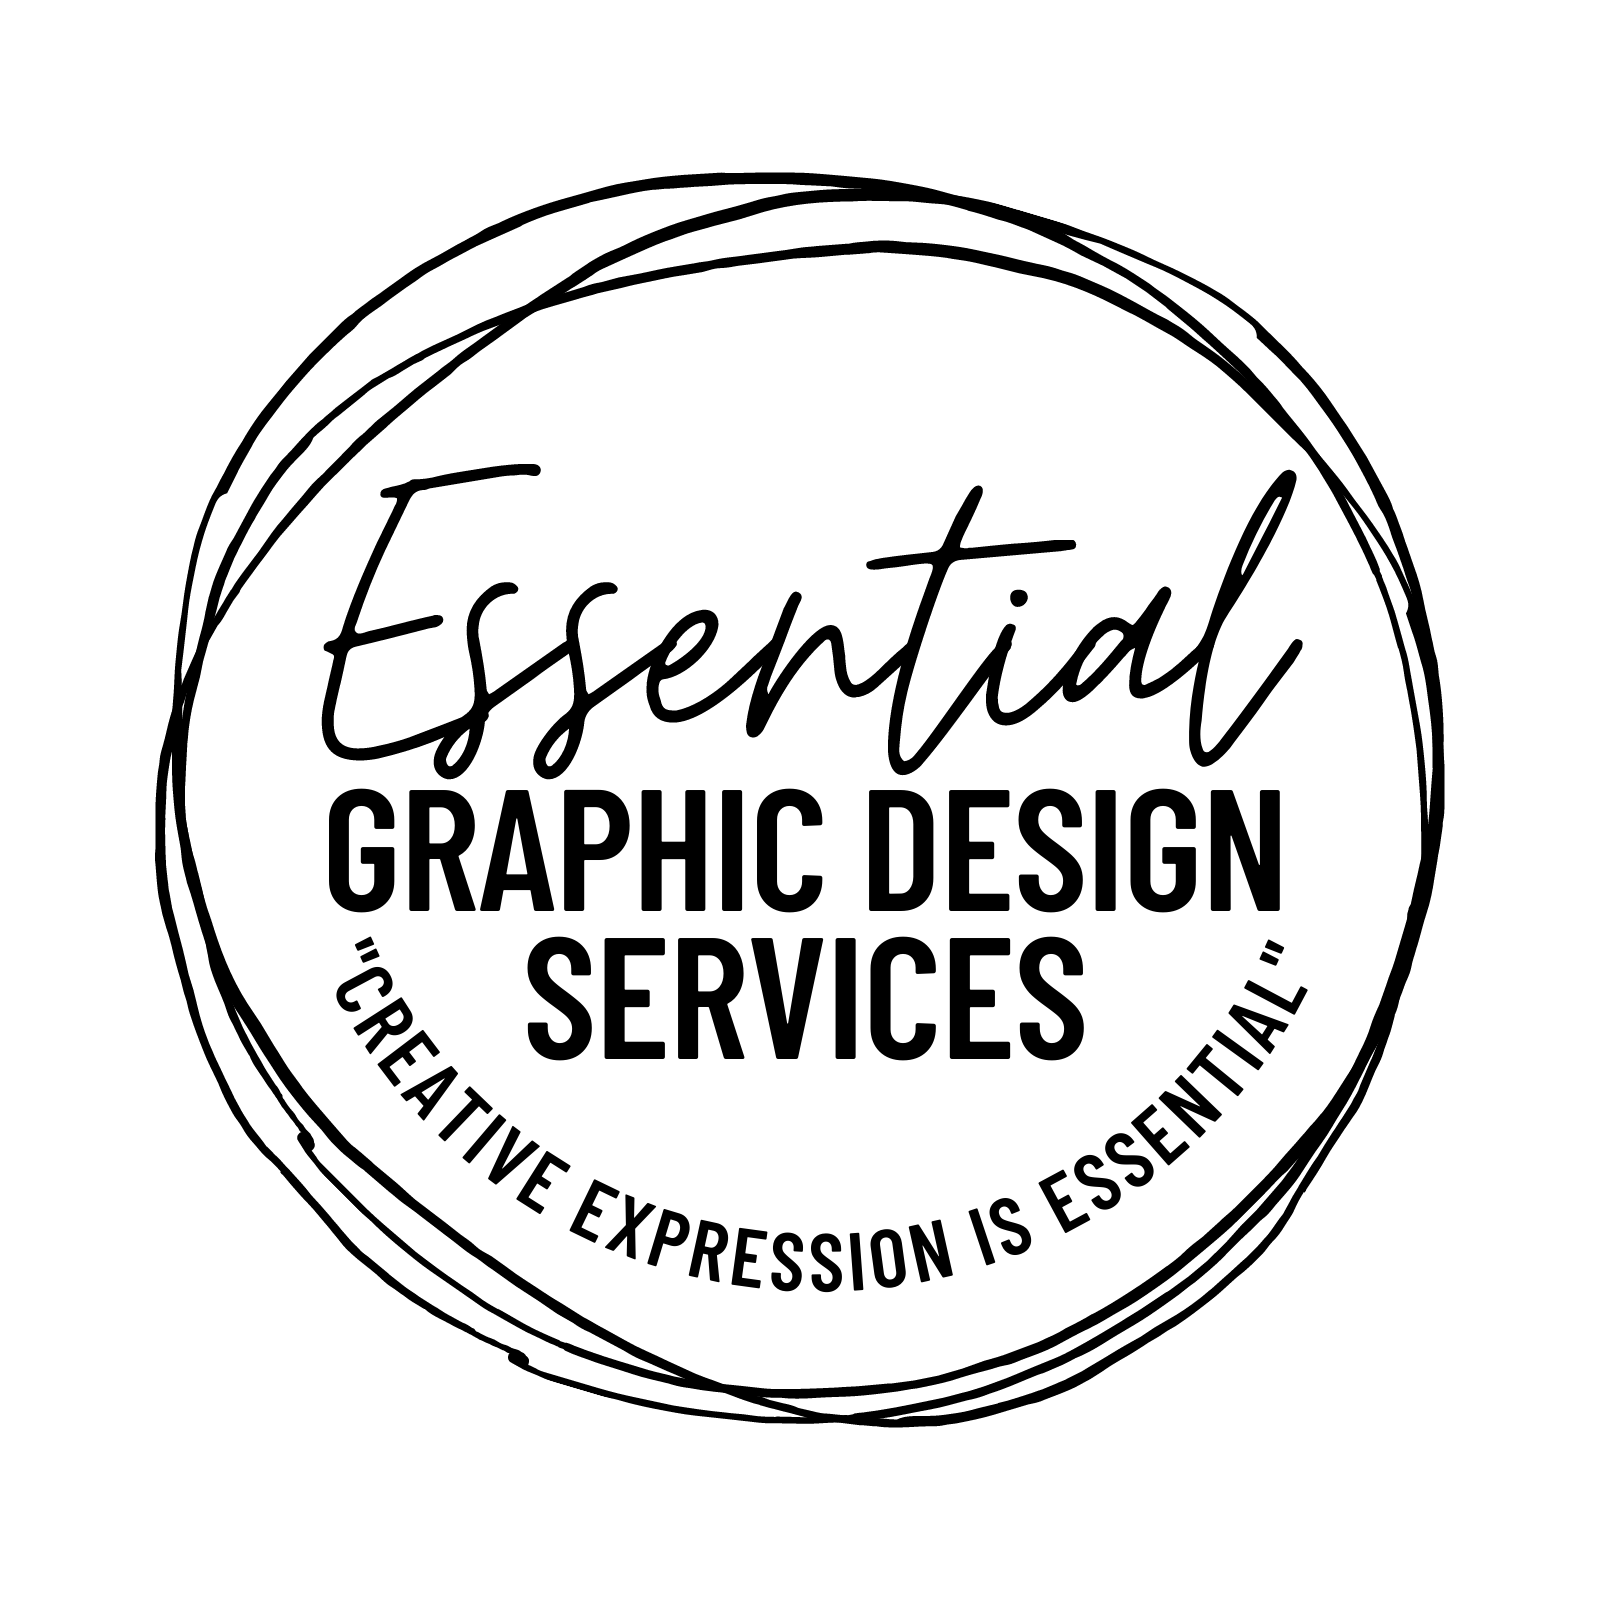 Essential Graphic Design Services, LLC